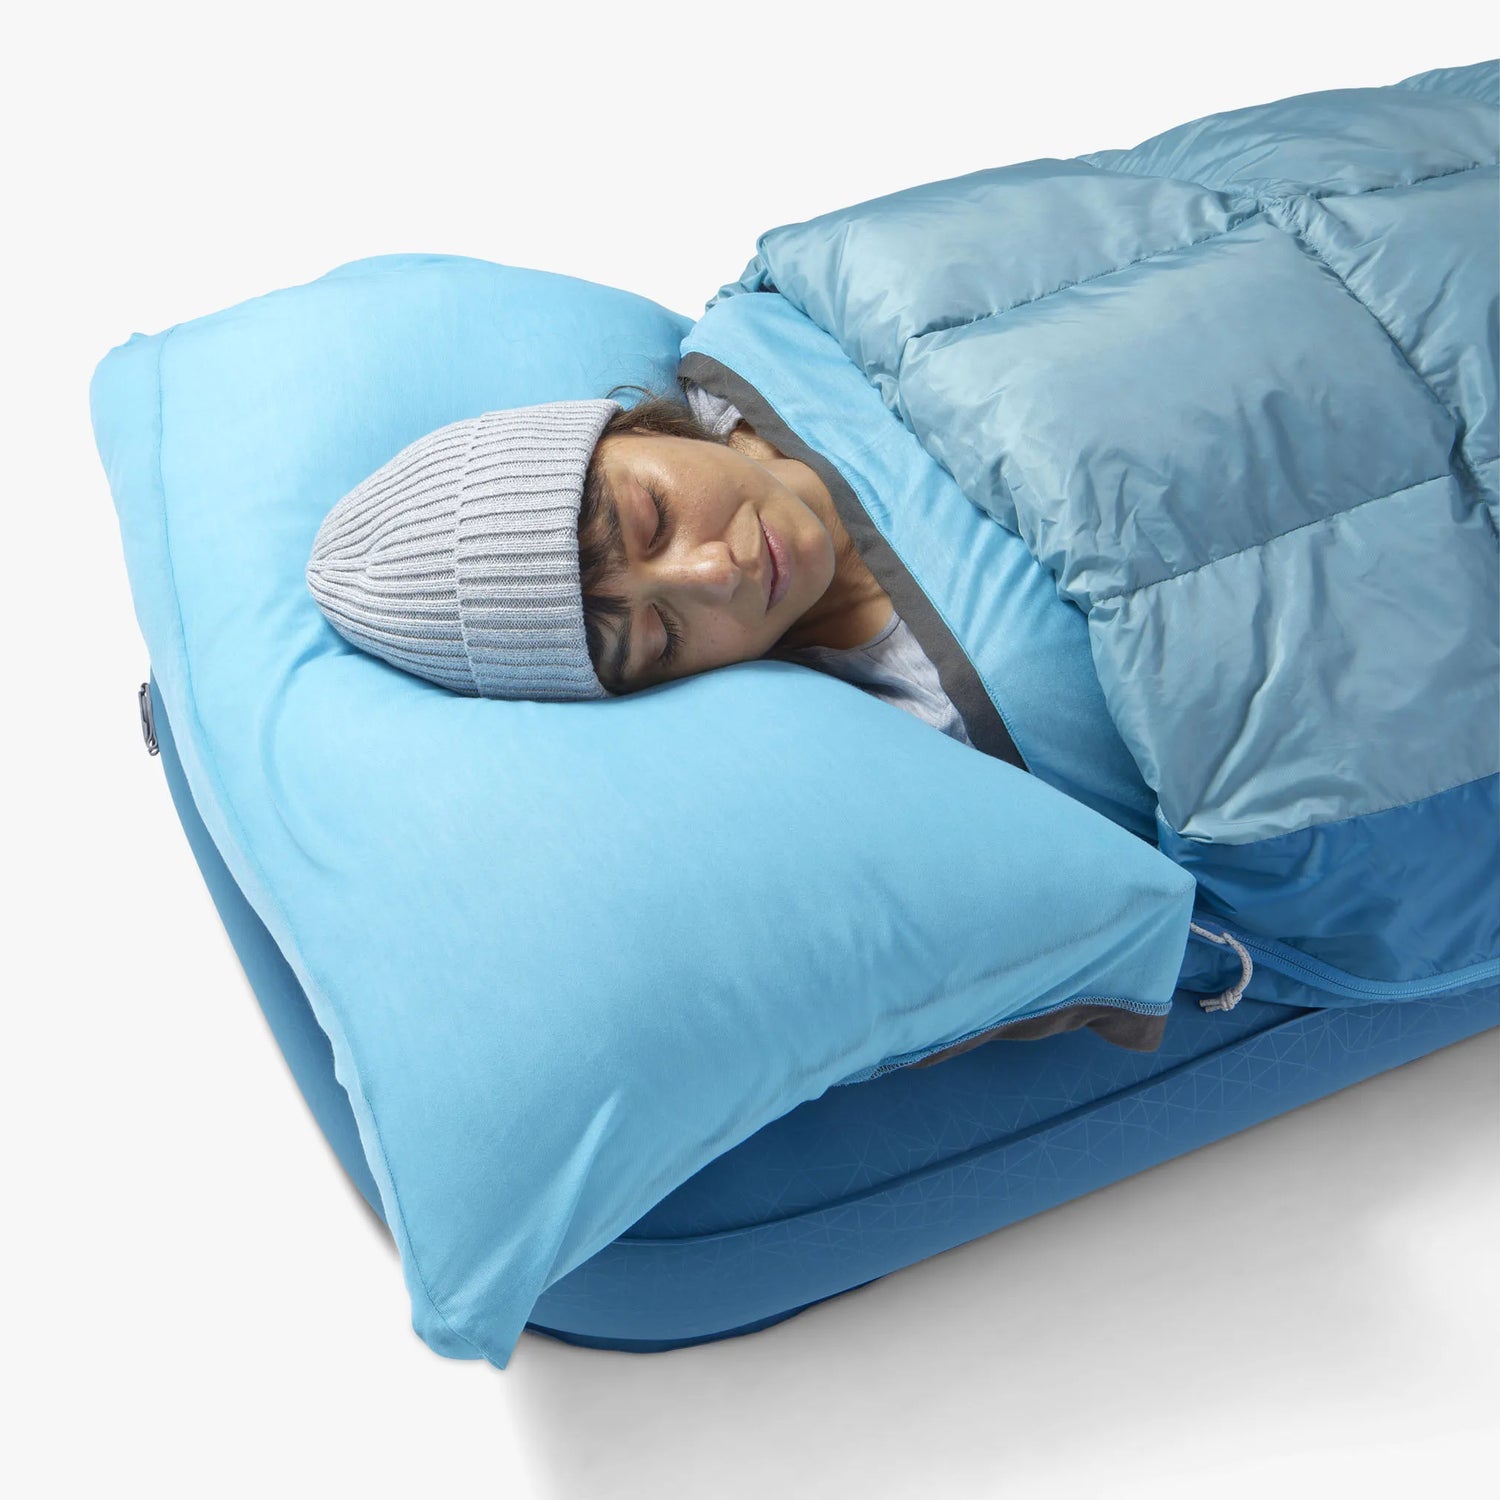 Traveller Down Sleeping Bag & Blanket (11°C)